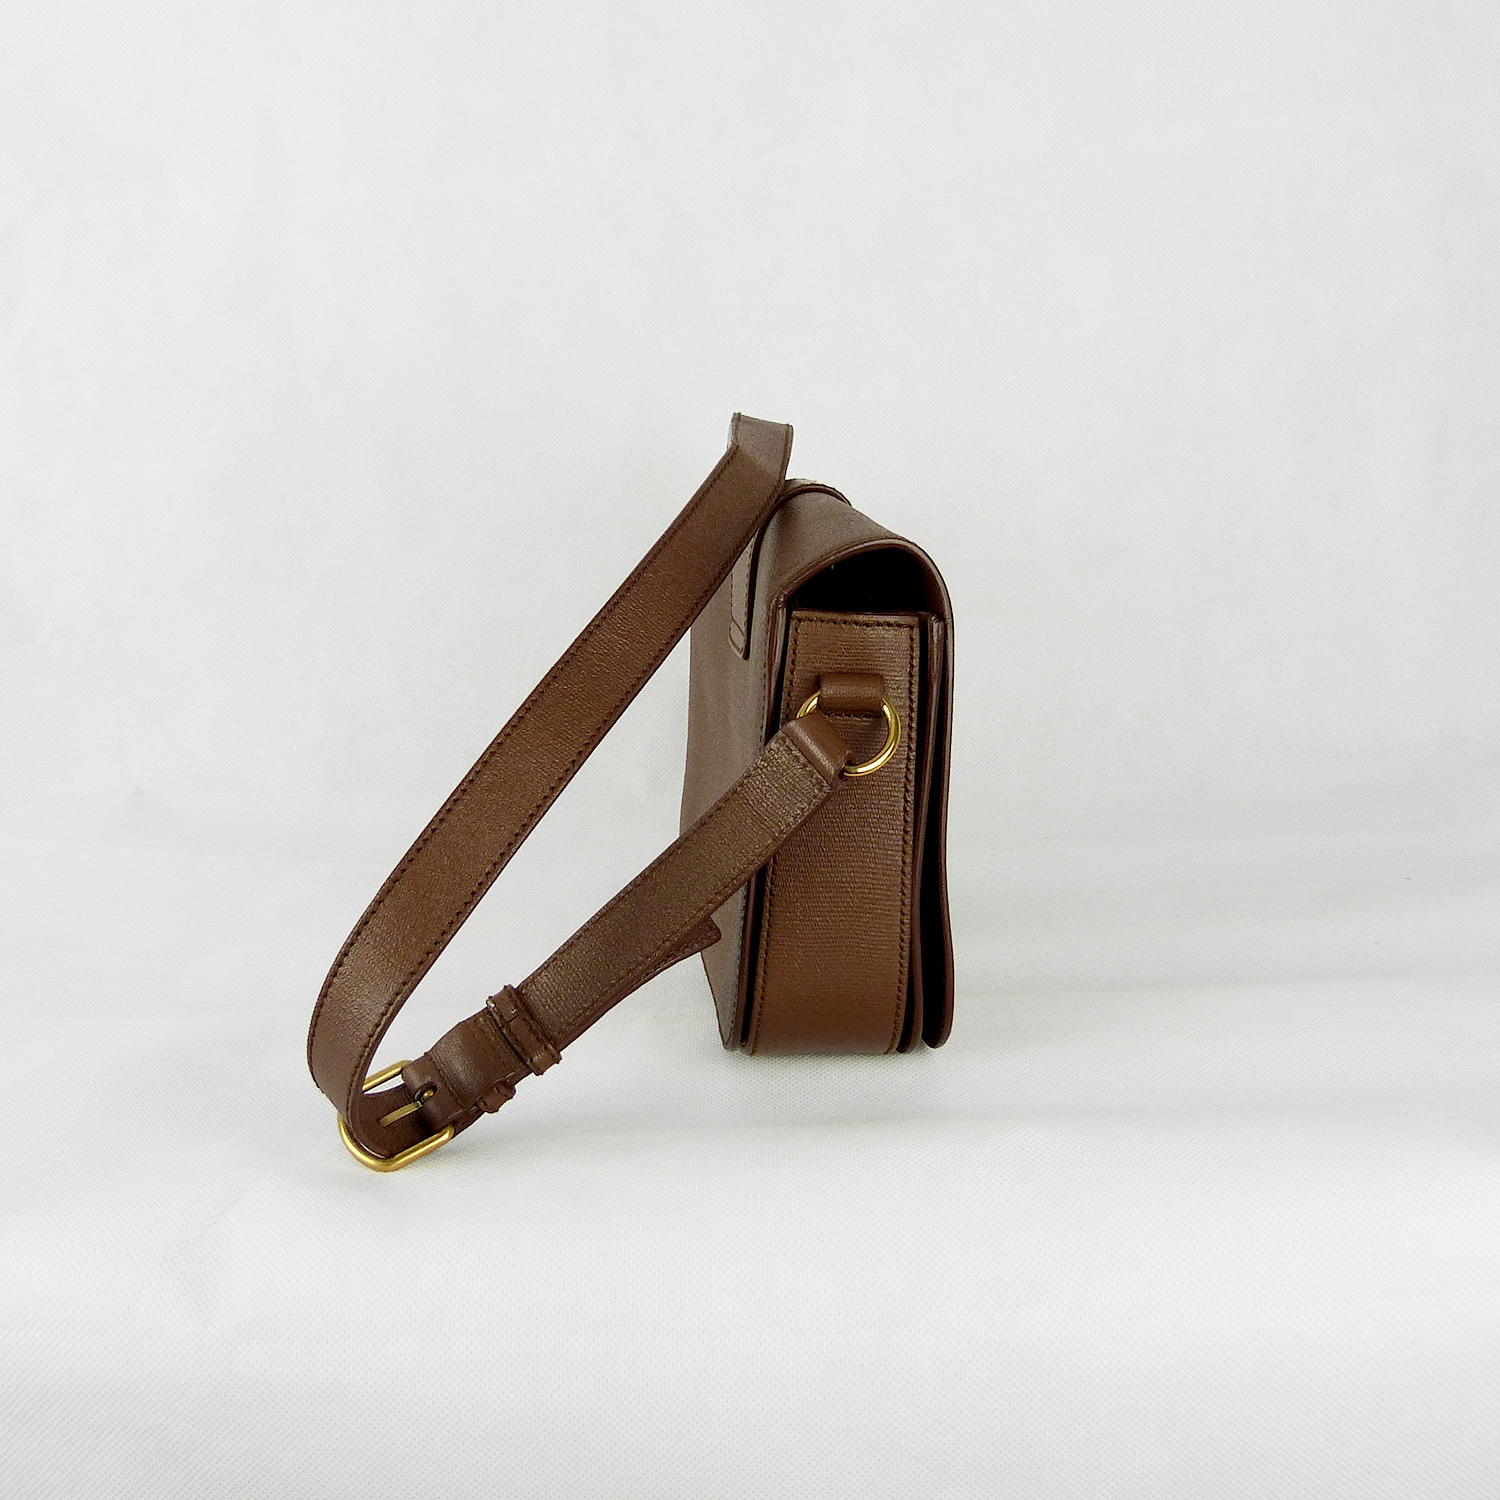 Sac à bandoulière Yves Saint Laurent Chyc Authentique d'occasion en cuir légèrement grainé couleur brun